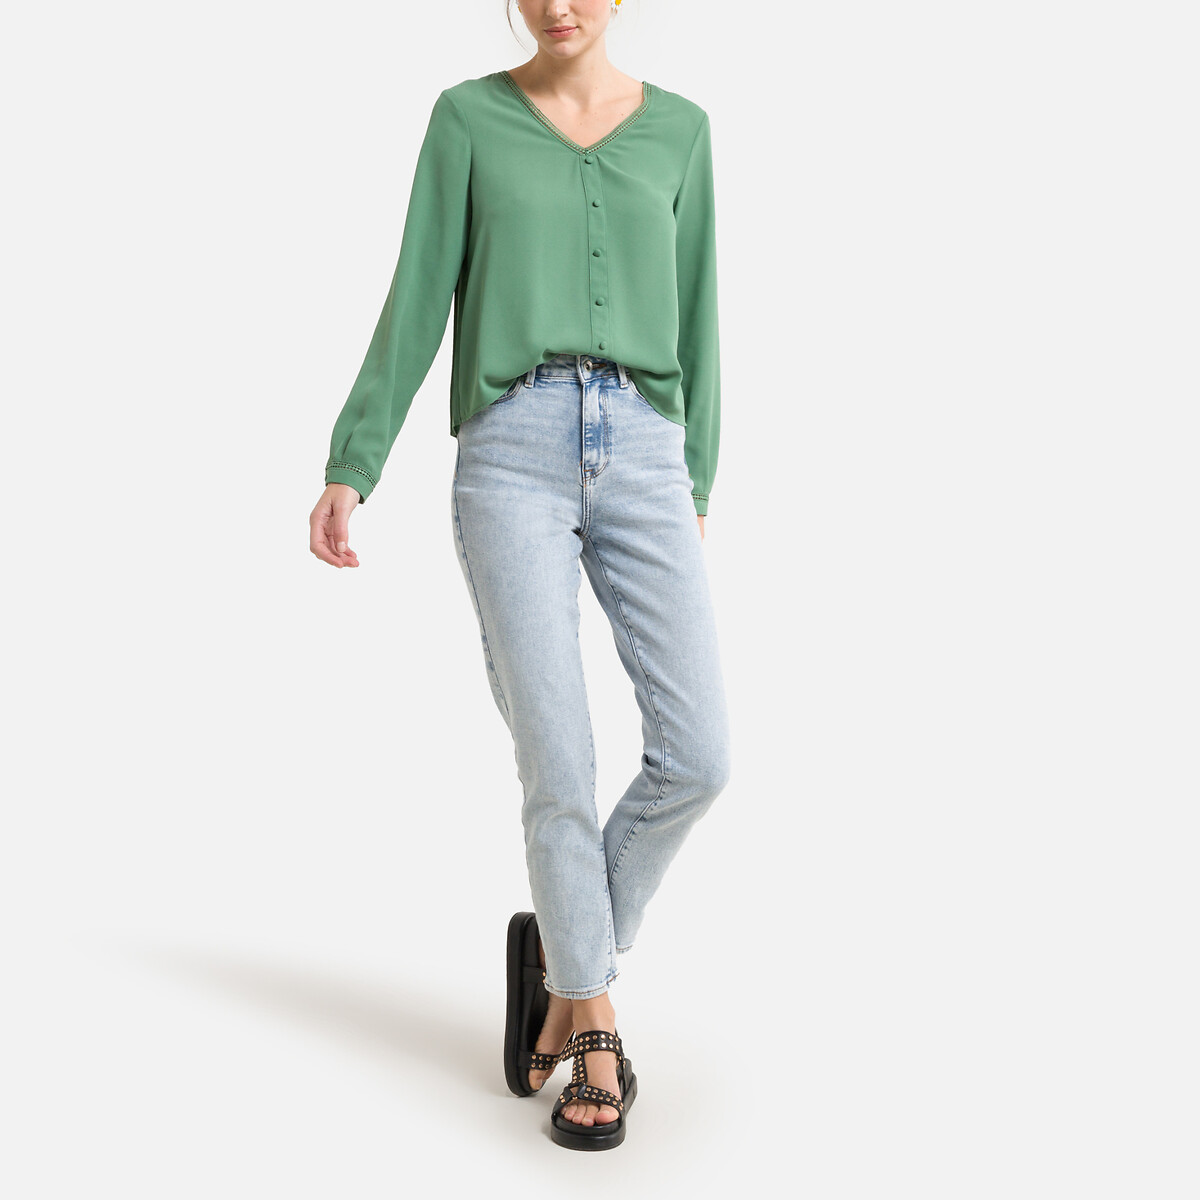 Блузка ONLY Короткая с пуговицами и v-образным вырезом S зеленый, размер S - фото 2